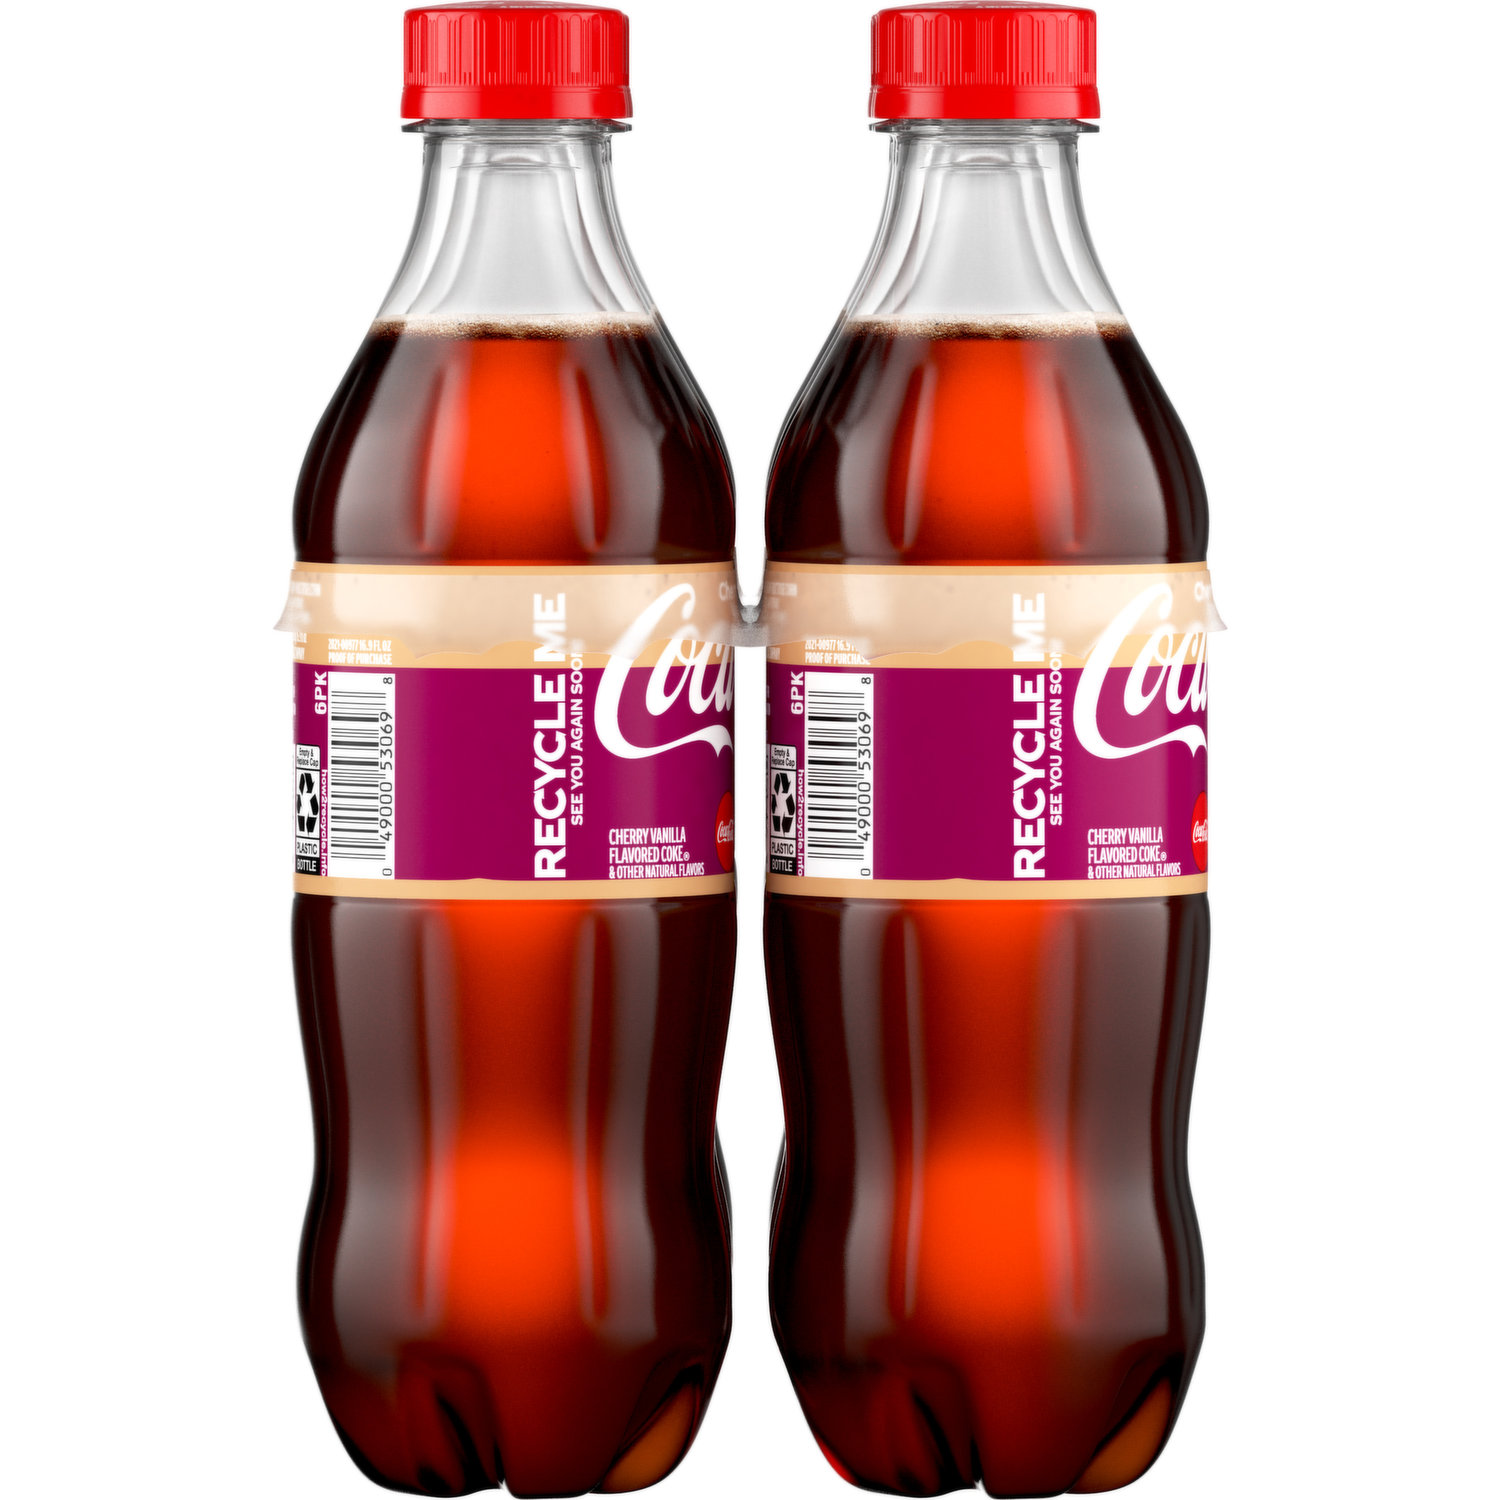 Coca-Cola Cherry Cola Soda Mini - 6 pk